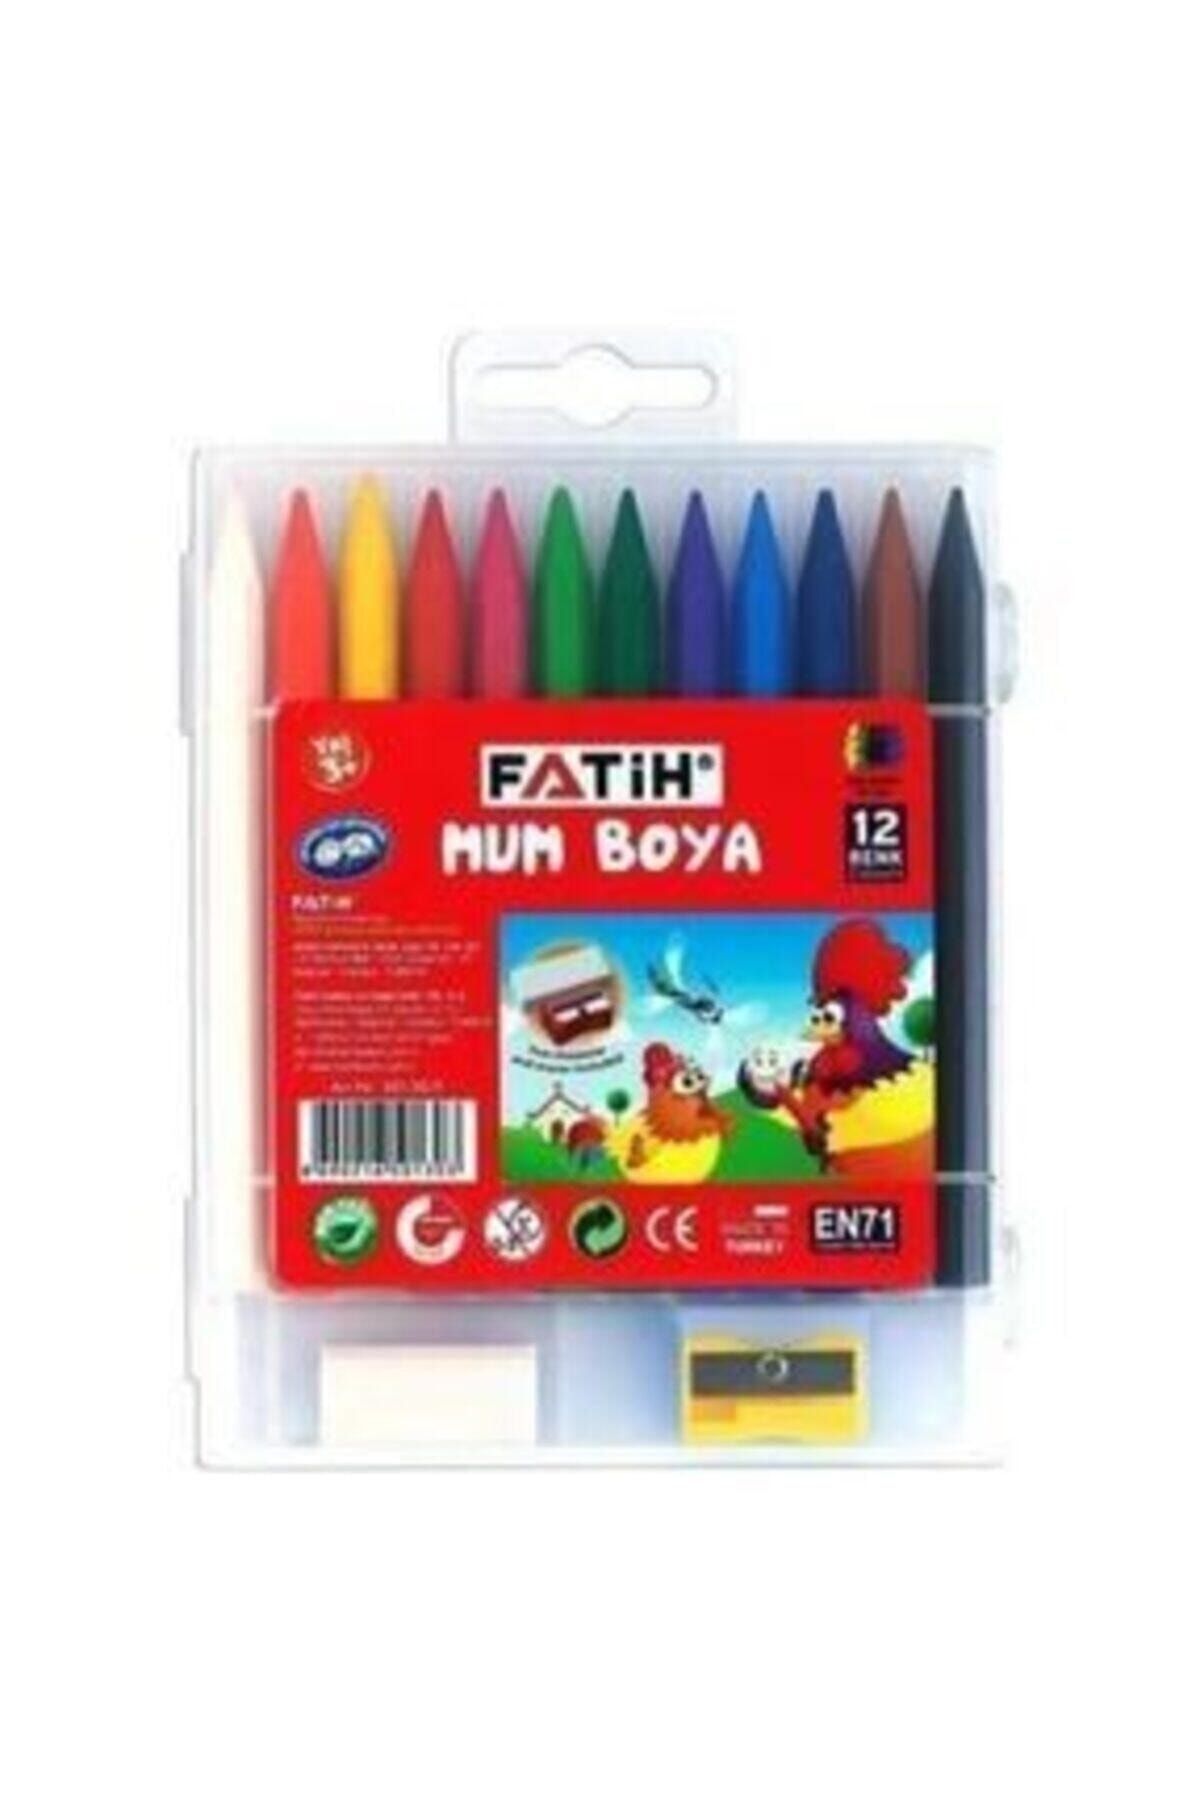 Fatih Mum Pastel Boya Polymer Crayons 12 Renk 07.14.083.033